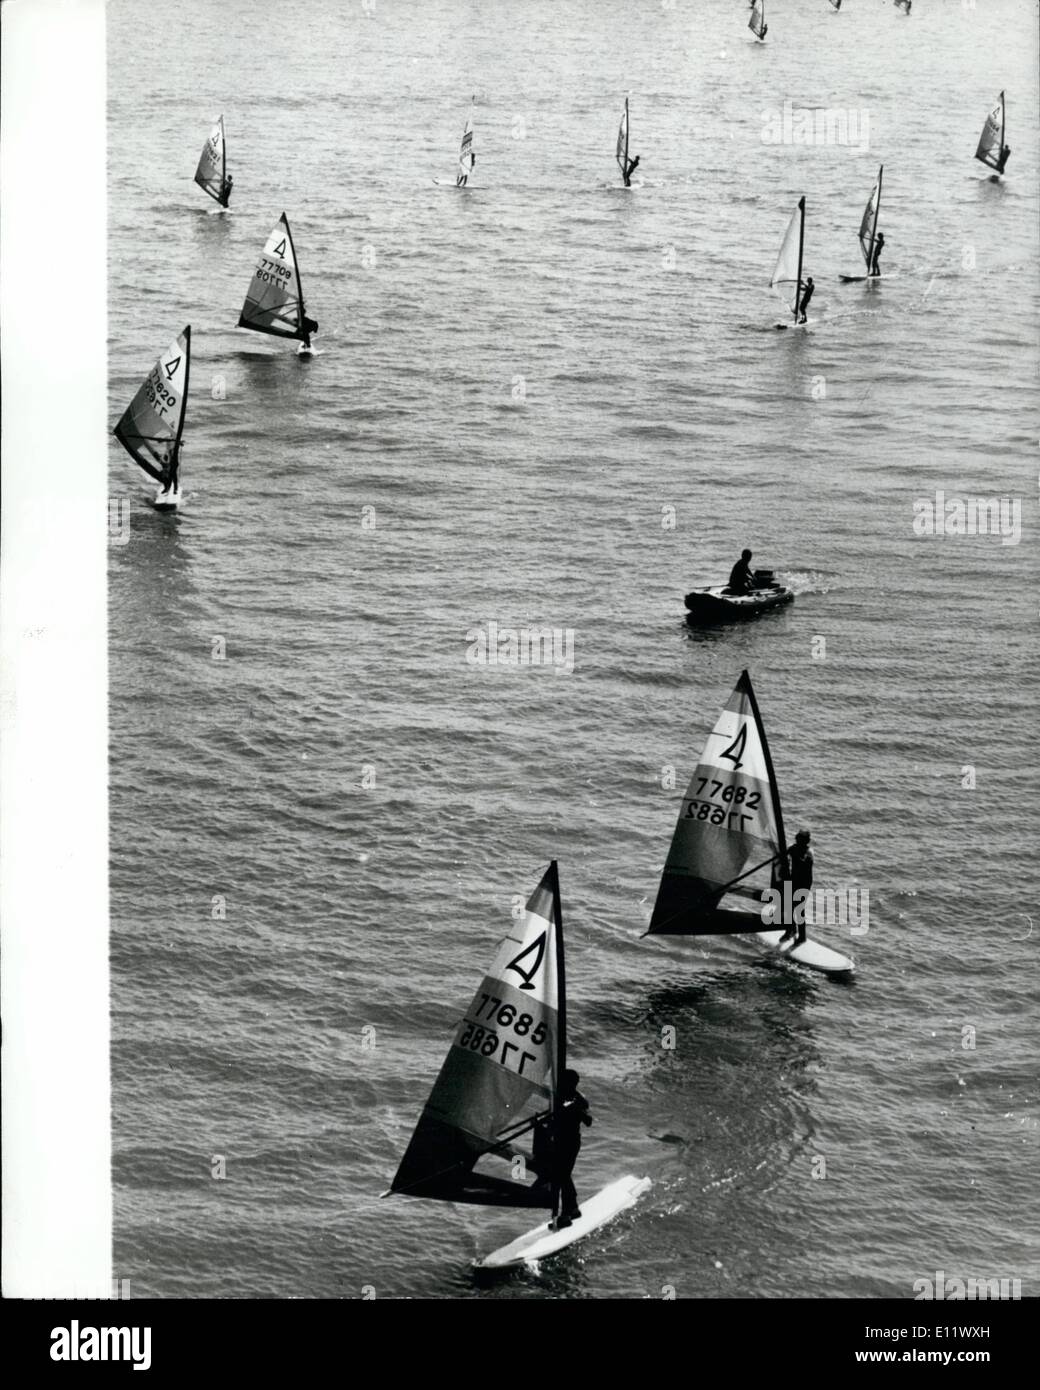 Sept. 09, 1980 - Windsurf-Weltmeisterschaften in Ungarn: 345 Teilnehmer aus 24 Ländern beteiligen sich an den 4 Th Windsurf-Weltmeisterschaft in Tiphany, befindet sich am nördlichen Ufer des Plattensees in Westungarn. Foto zeigt eine Gesamtansicht während der WM auf dem Plattensee. Stockfoto